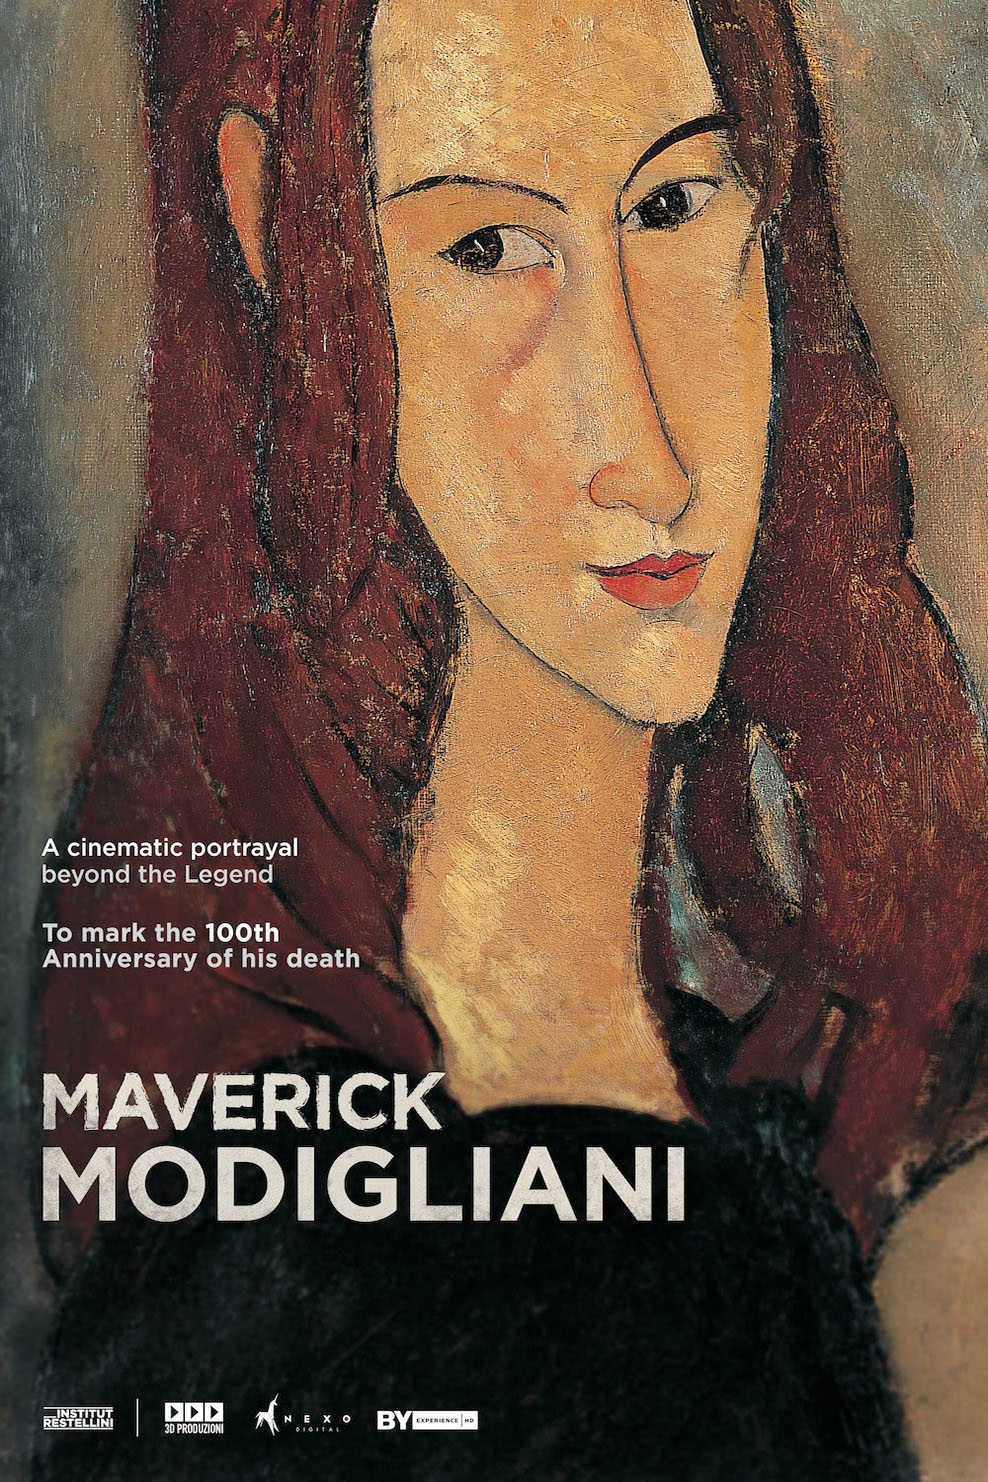 Still of Maledetto Modigliani (Maverick Modigliani)